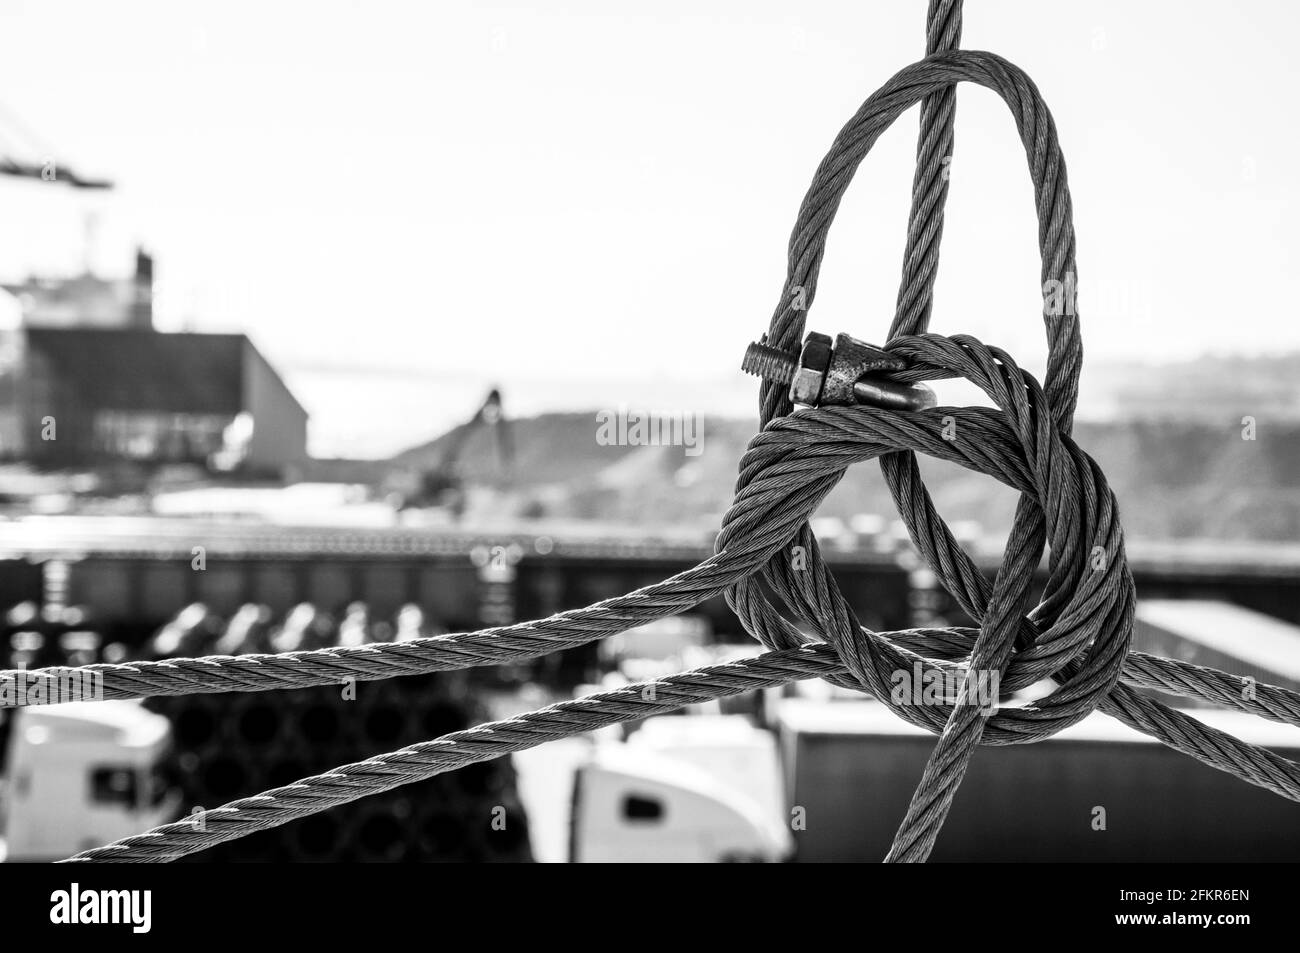 Photo en noir et blanc d'un nœud de corde métallique avec un paysage industriel flou en arrière-plan. Terminal de fret TIS dans le port d'Ukraine. Bac industriel Banque D'Images